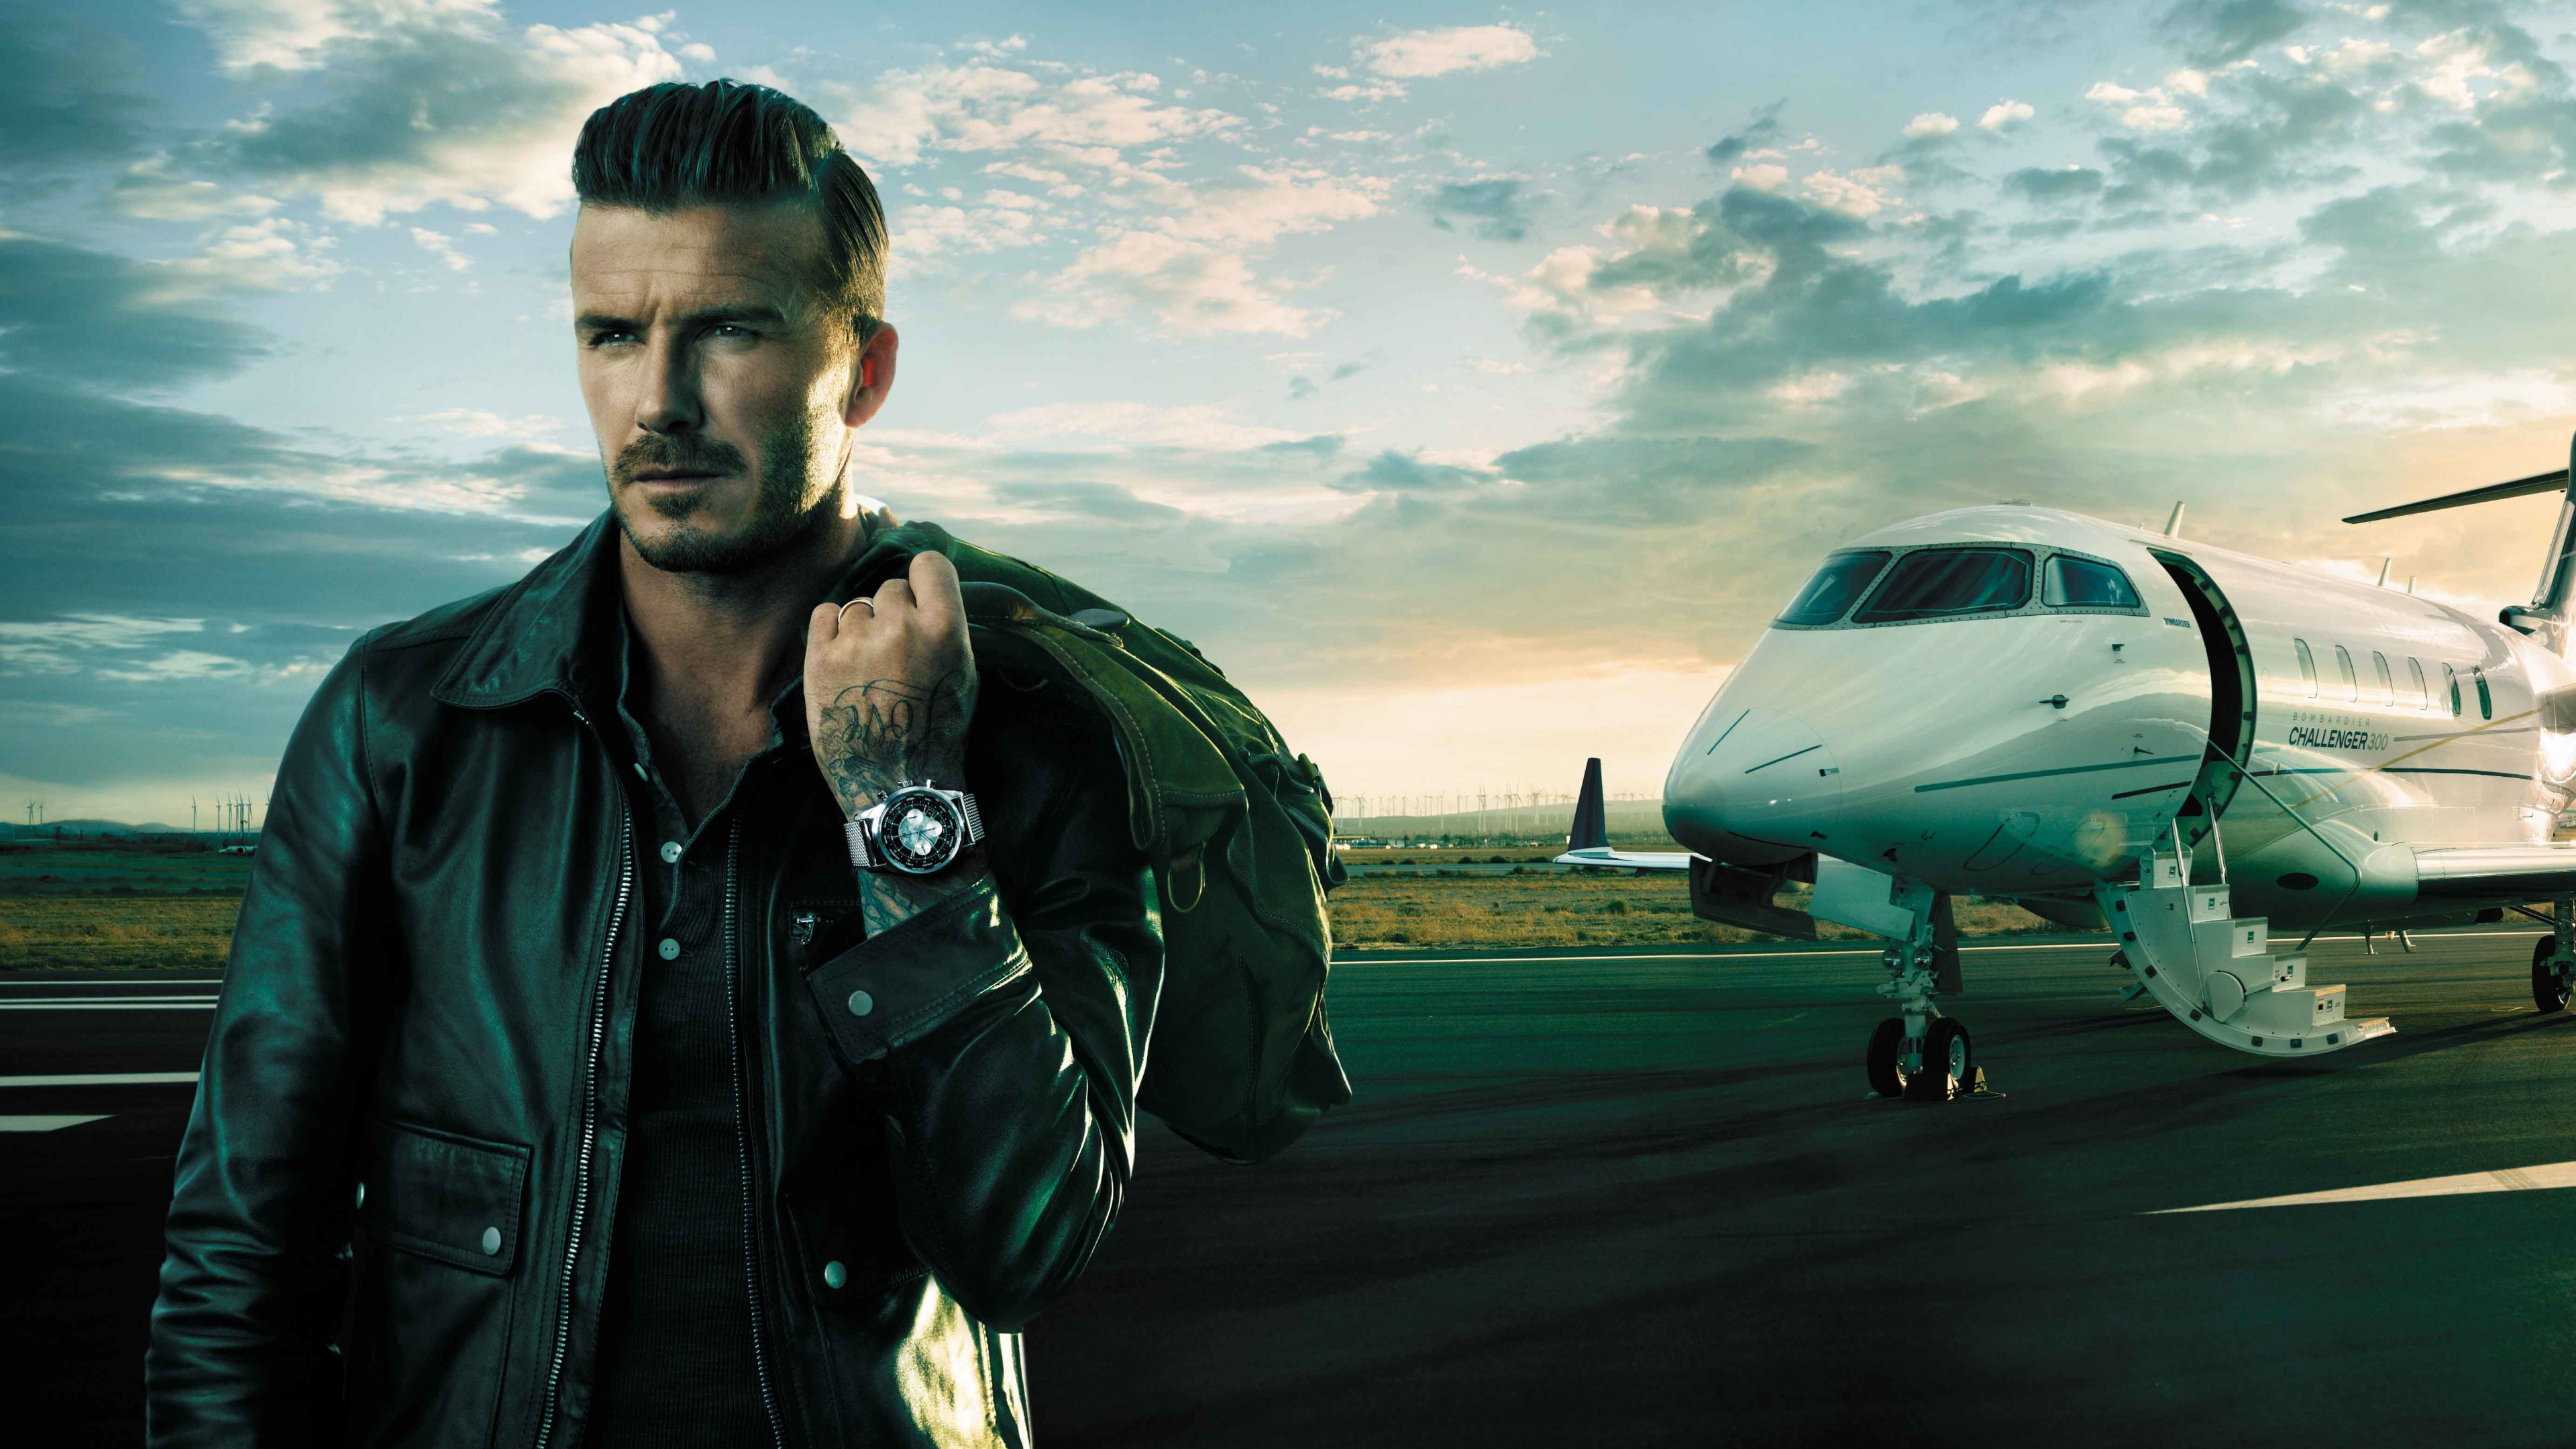 David Beckham, Breitling SA, Ingeniería Aeroespacial, Los Viajes Aéreos, Aeronave. Wallpaper in 3840x2160 Resolution